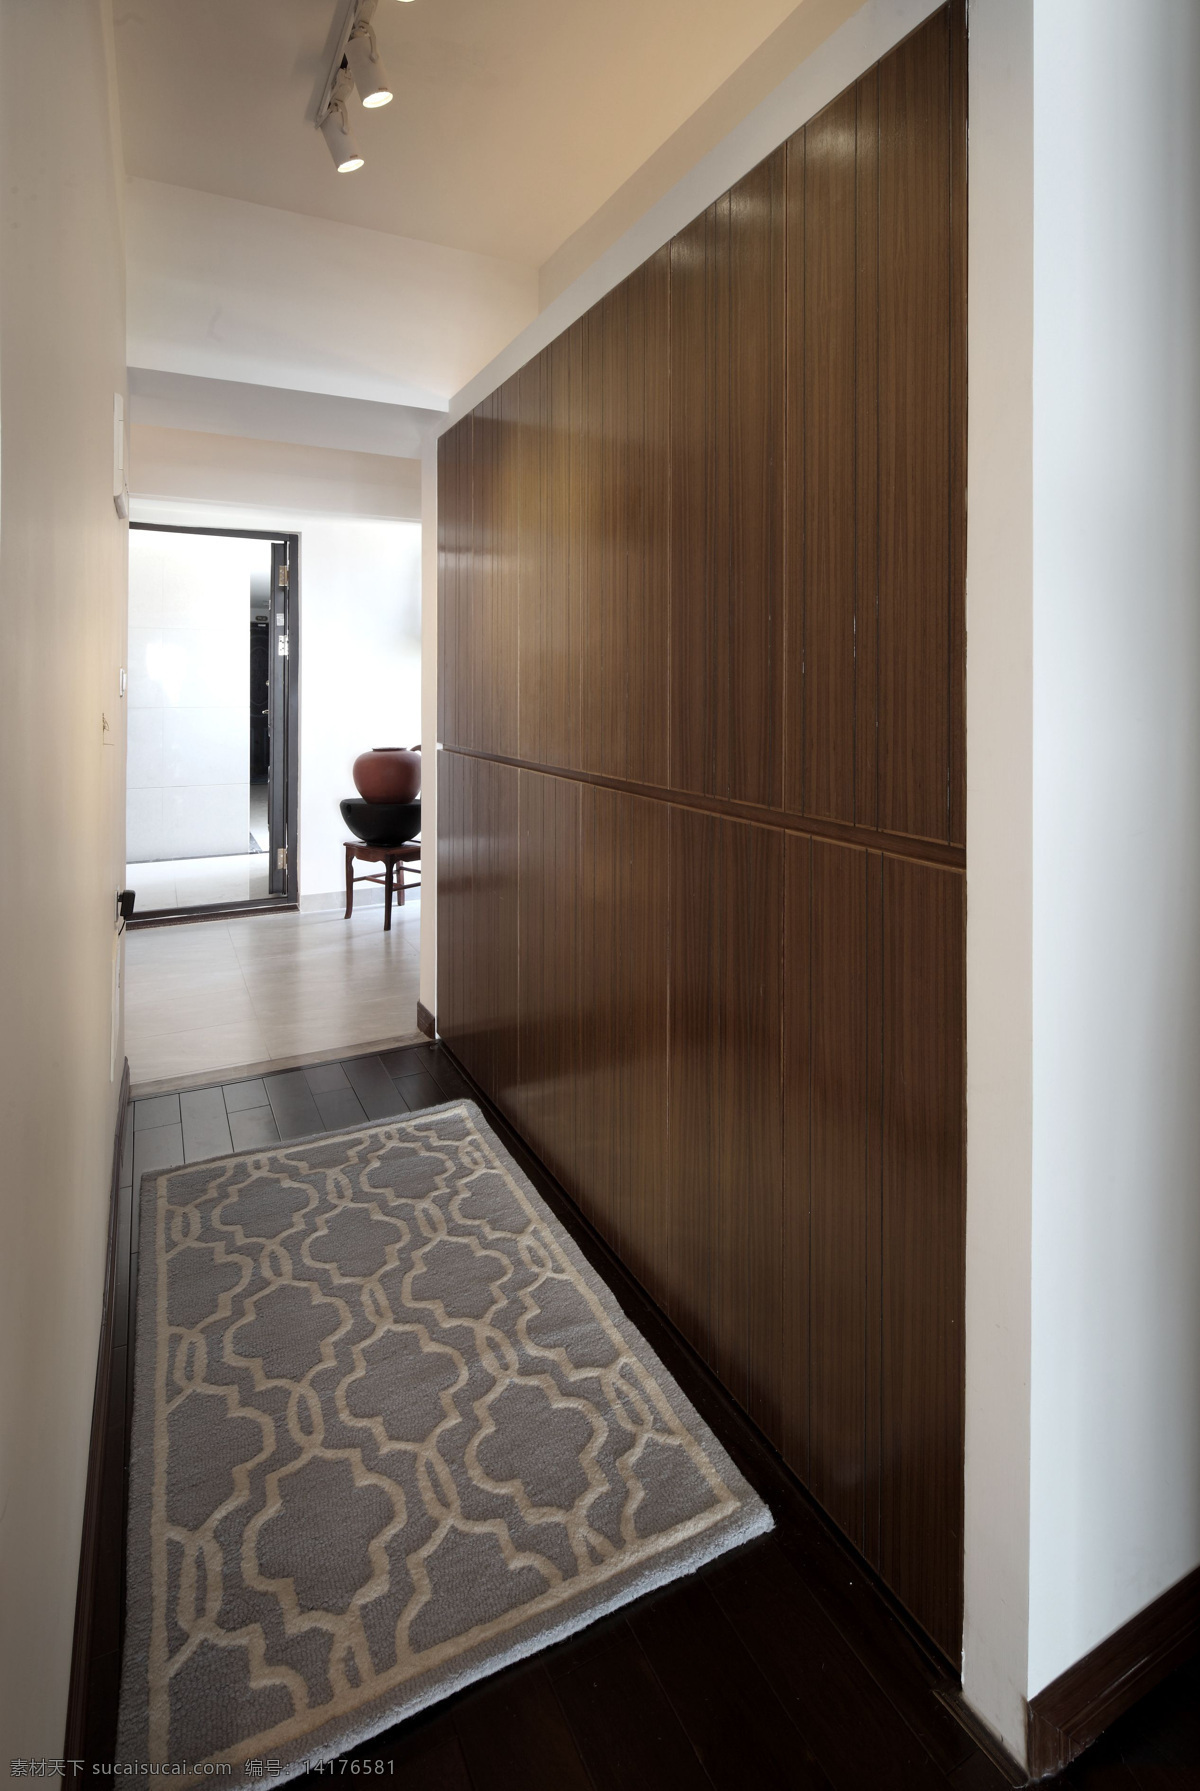 小 户型 室内 走廊 设计图 家居 家居生活 室内设计 装修 家具 装修设计 环境设计 背景墙